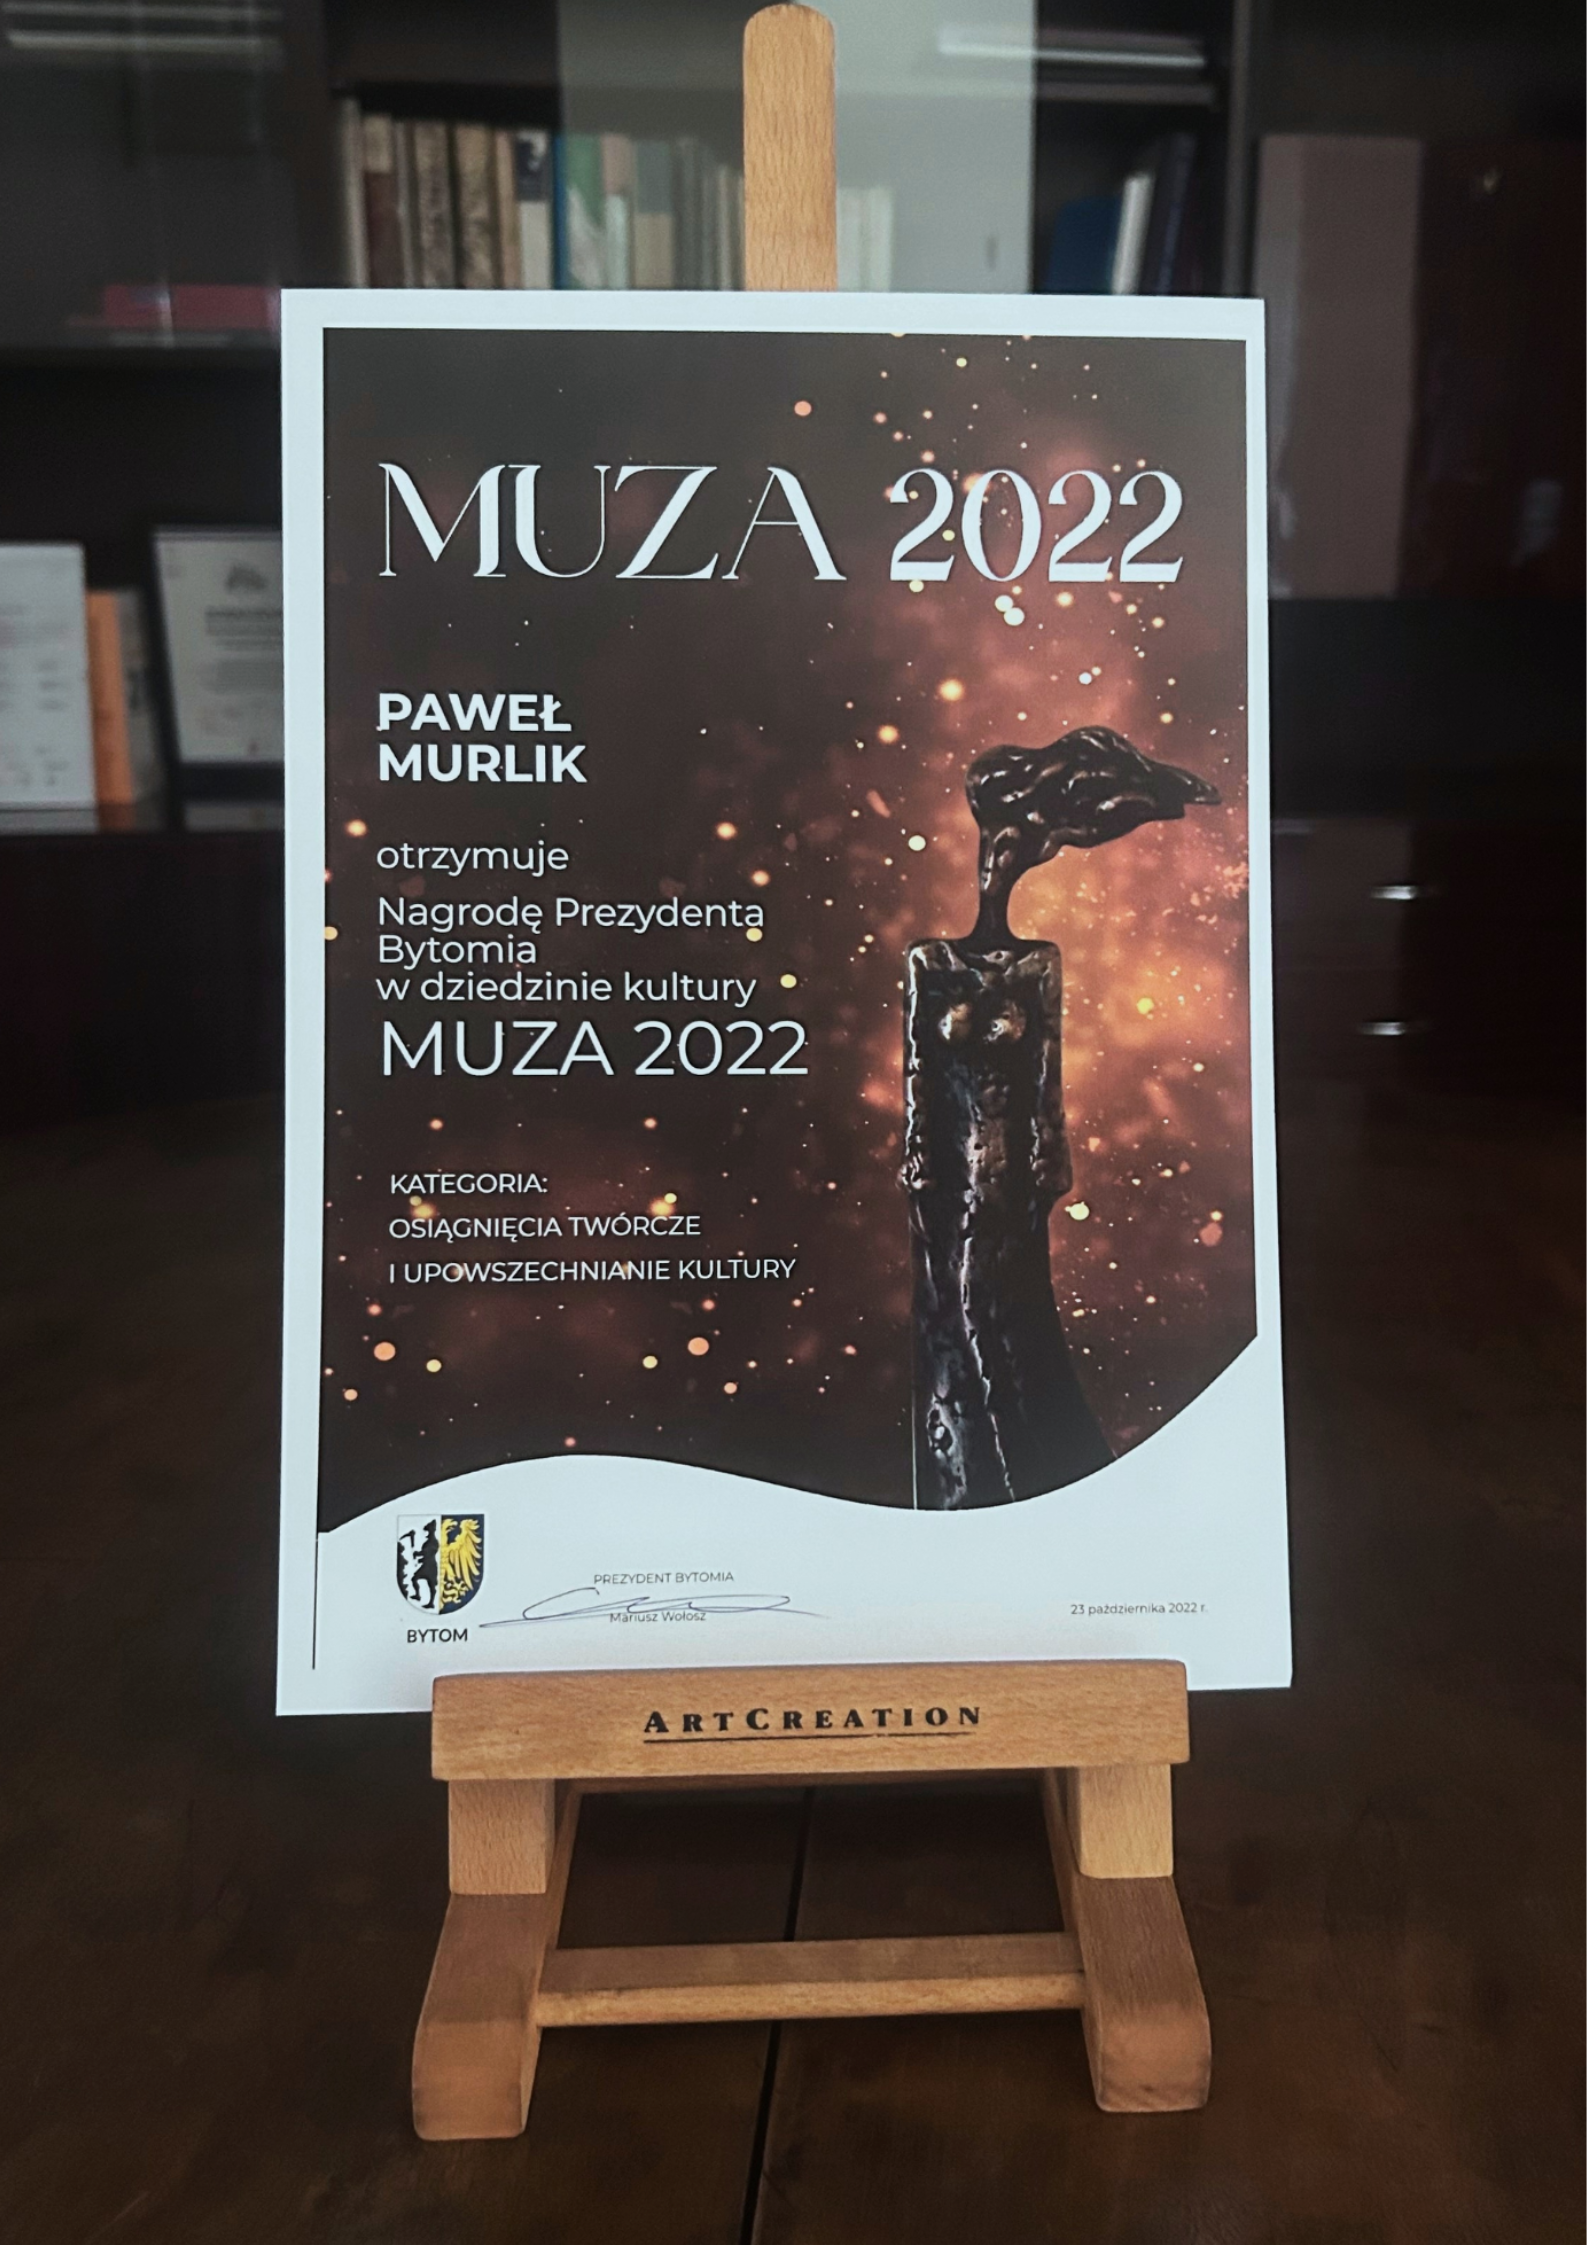 Plakat muza 2022. Z prawej strony statuetka kobiety z rozwianym włosem. Z lewej strony biały napis Paweł Murlik otrzymuje nagrodę Prezydenta Bytomia w dziedzinie kultury Muza 2022